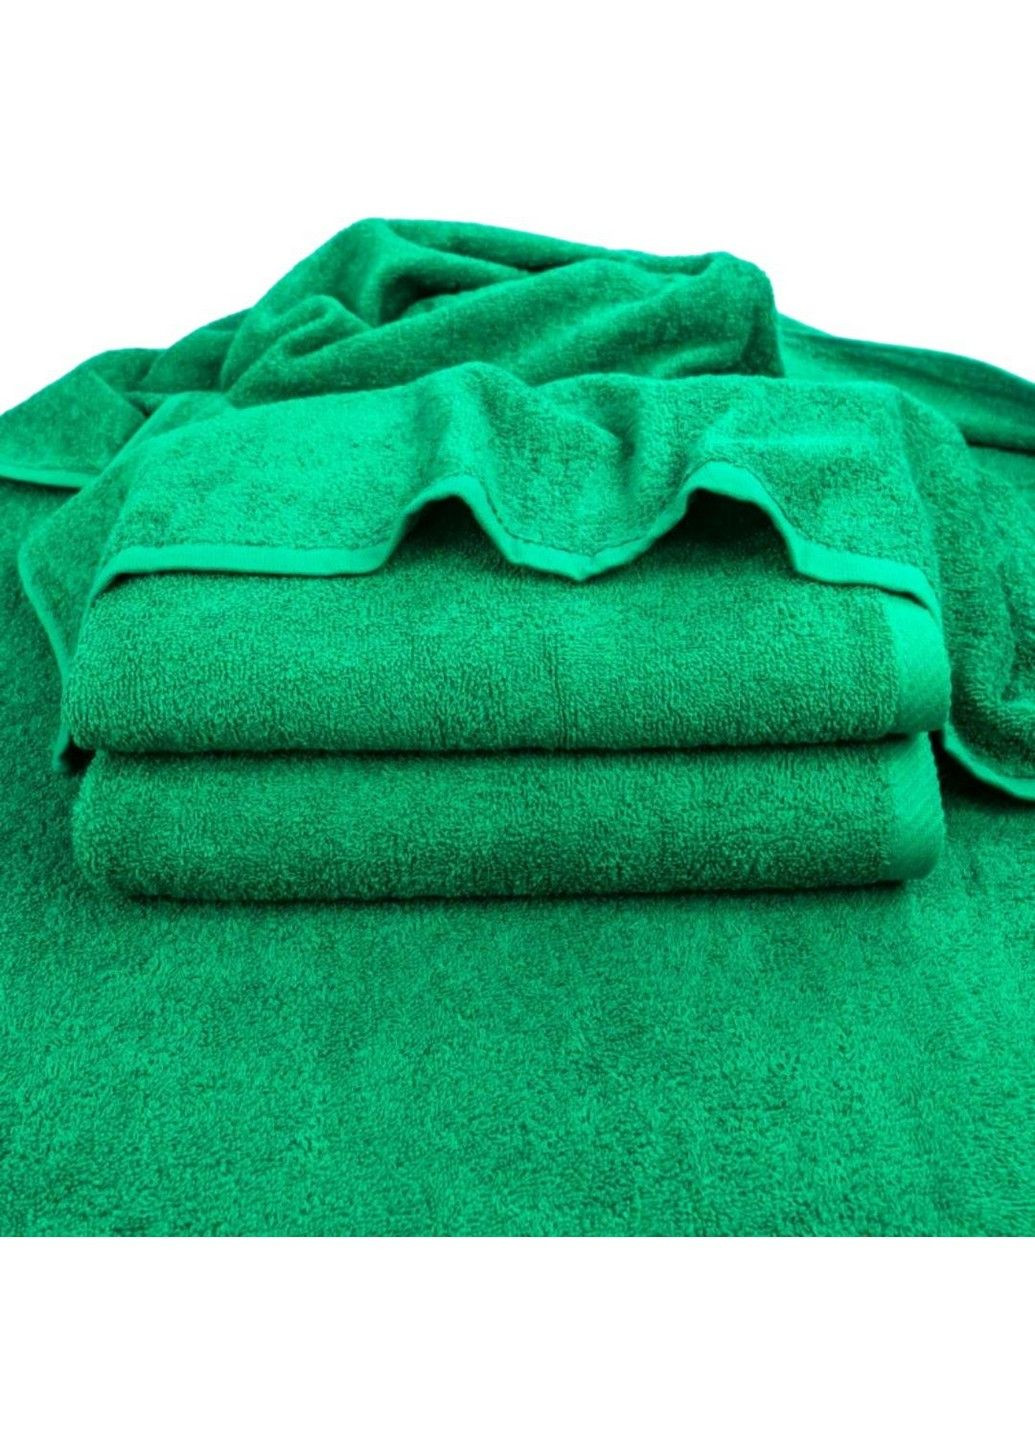 GM Textile рушник махровий, 70*140 см зелений виробництво - Узбекистан